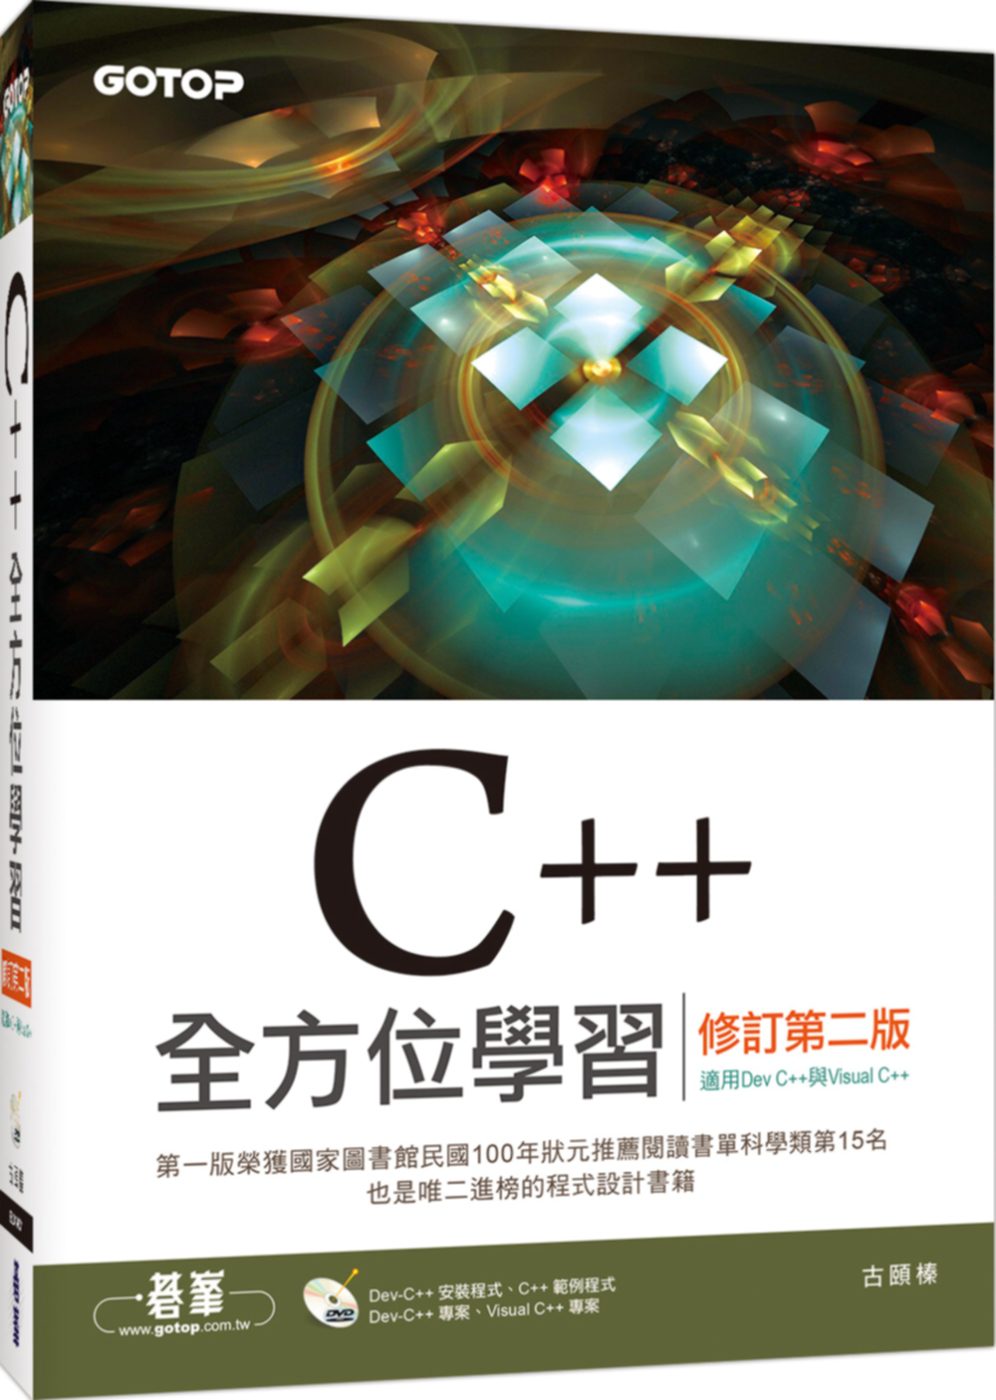 C++全方位學習(修訂第二版)(適用Dev